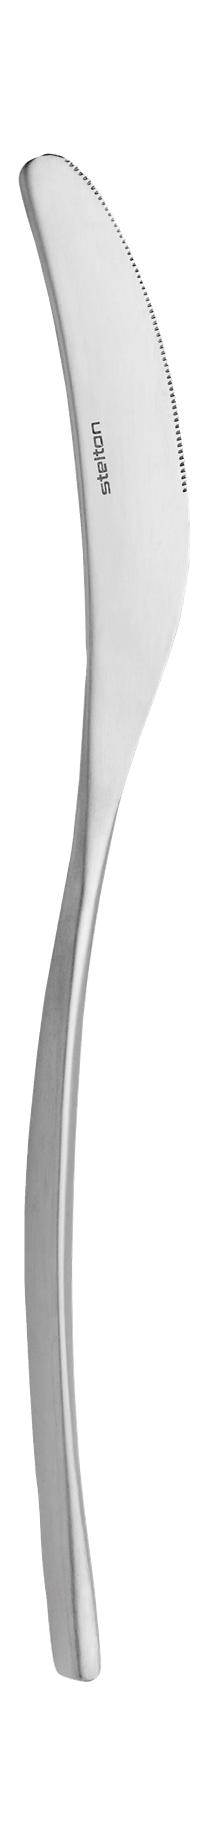 Nóż stołowy Stelton Capelano